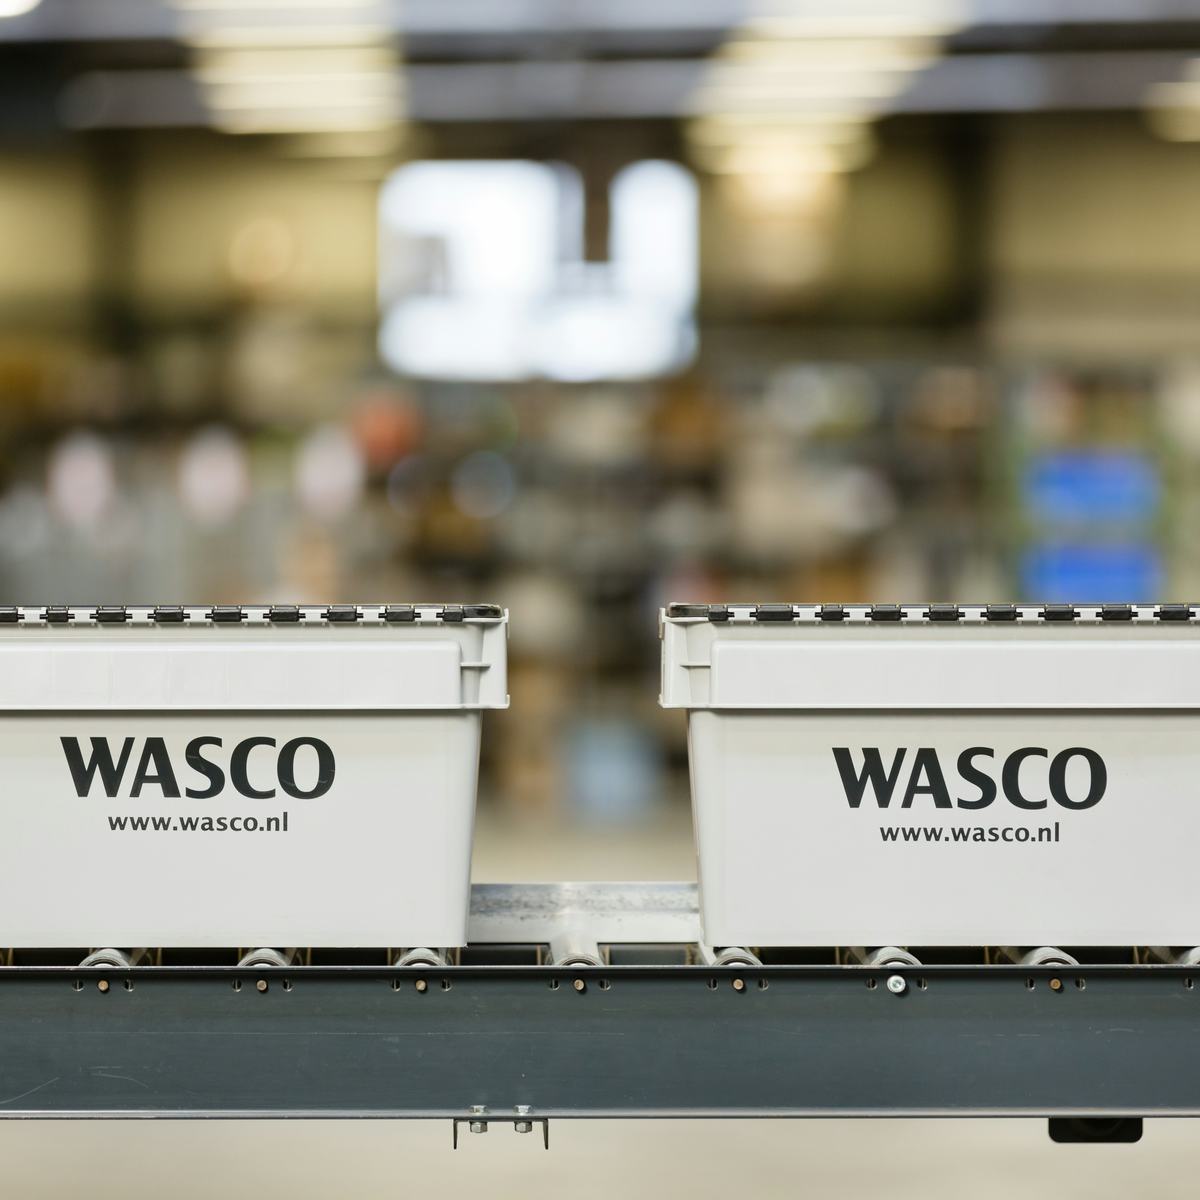 Voorraadbeheer Wasco slimmer dankzij RFID-chip